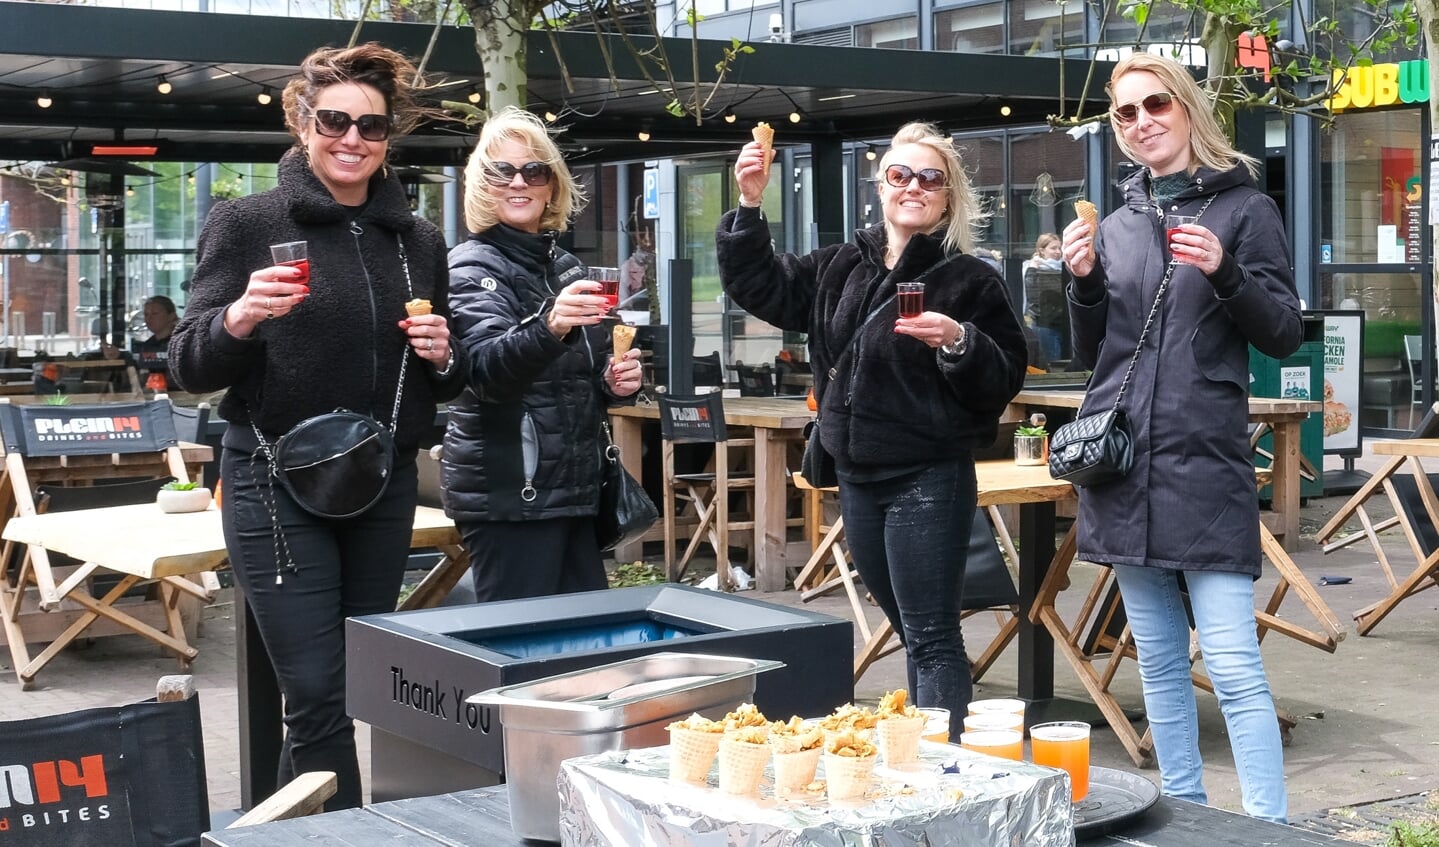 De dames op de foto bij Plein 14 zijn Sylvia, Monique, Linnet en Roos uit Hoofddorp. Ze krijgen een Spaanse rosé (Torres de Mas Rabell) of een eigen gebrouwen Soho Blond bier. Met een lekkere snack. . 